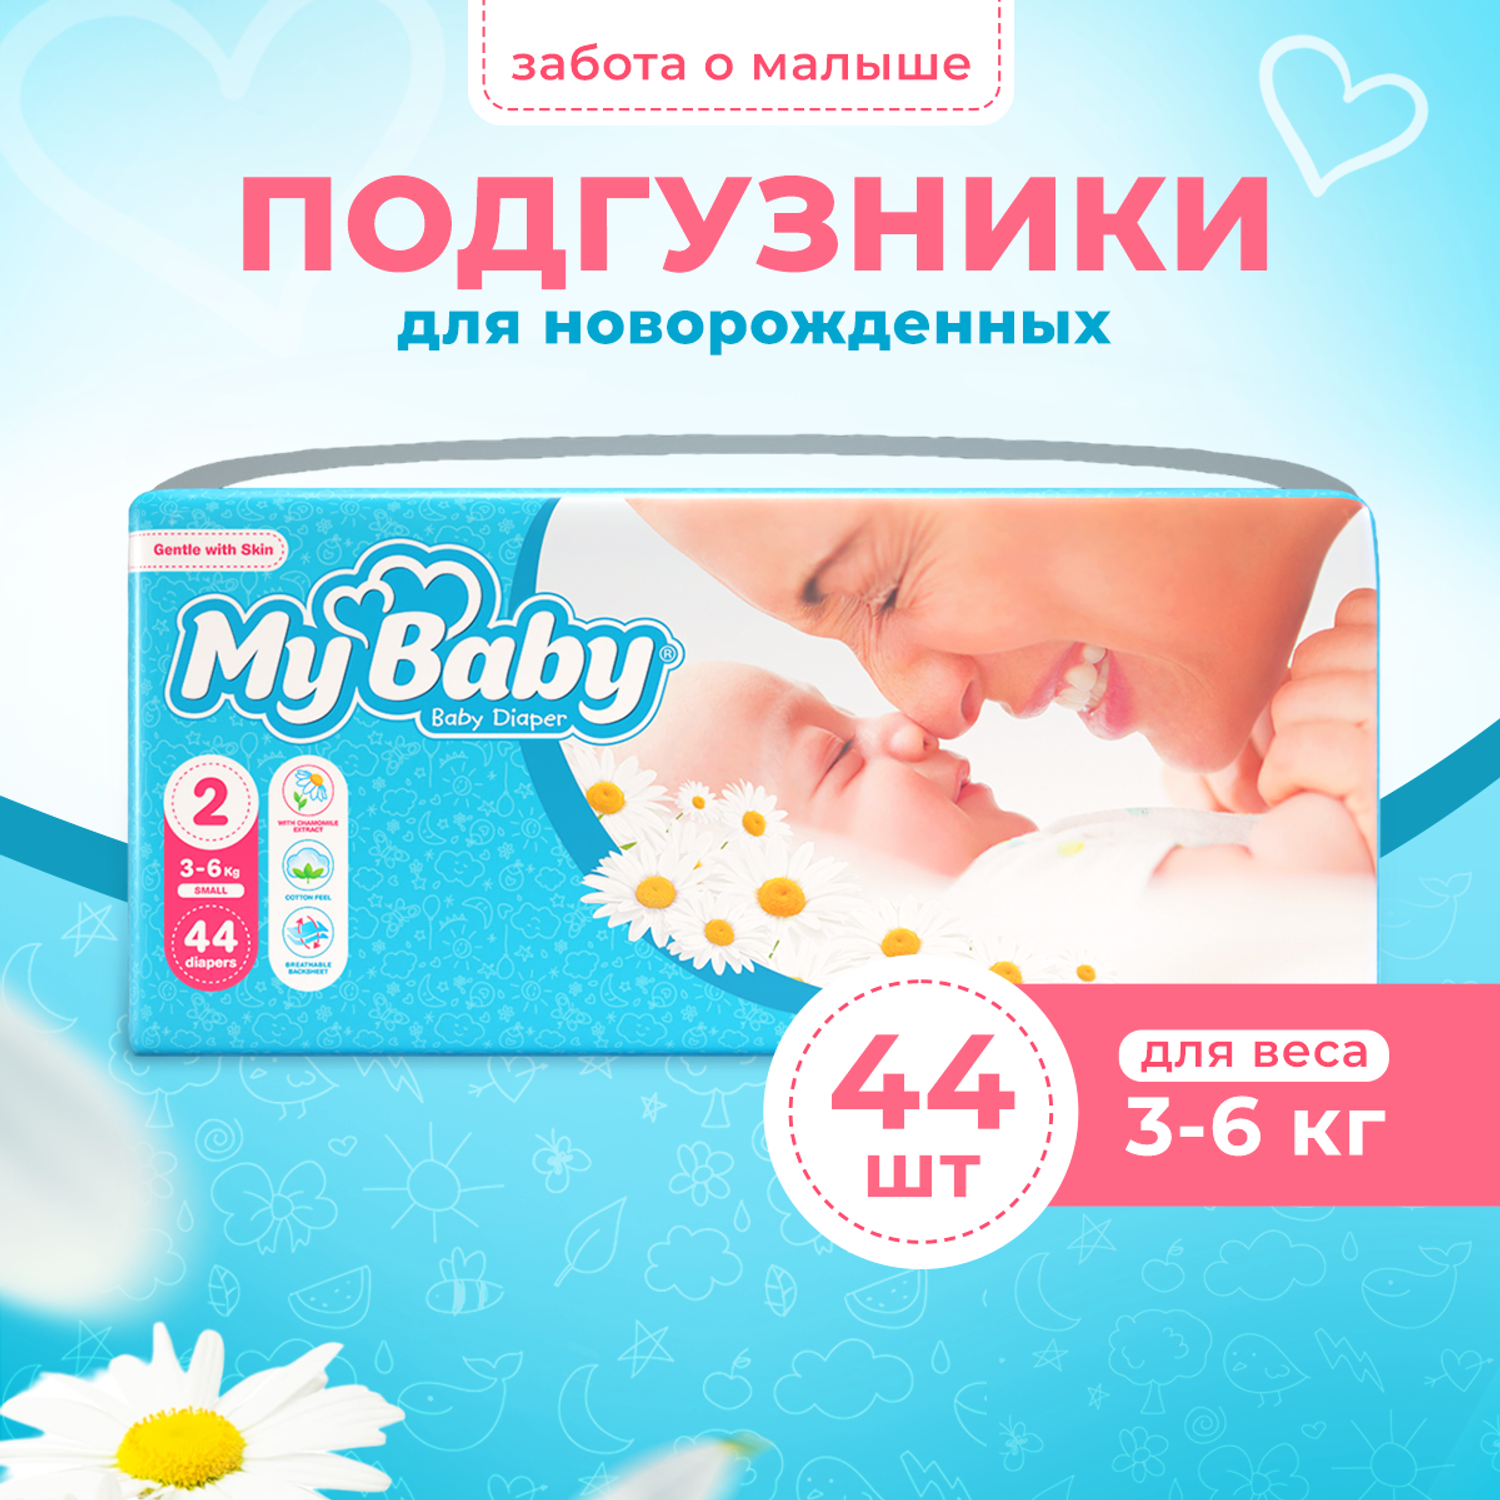 Подгузники My baby Baby diaper Economy размер 2 (3-6 кг) - фото 1